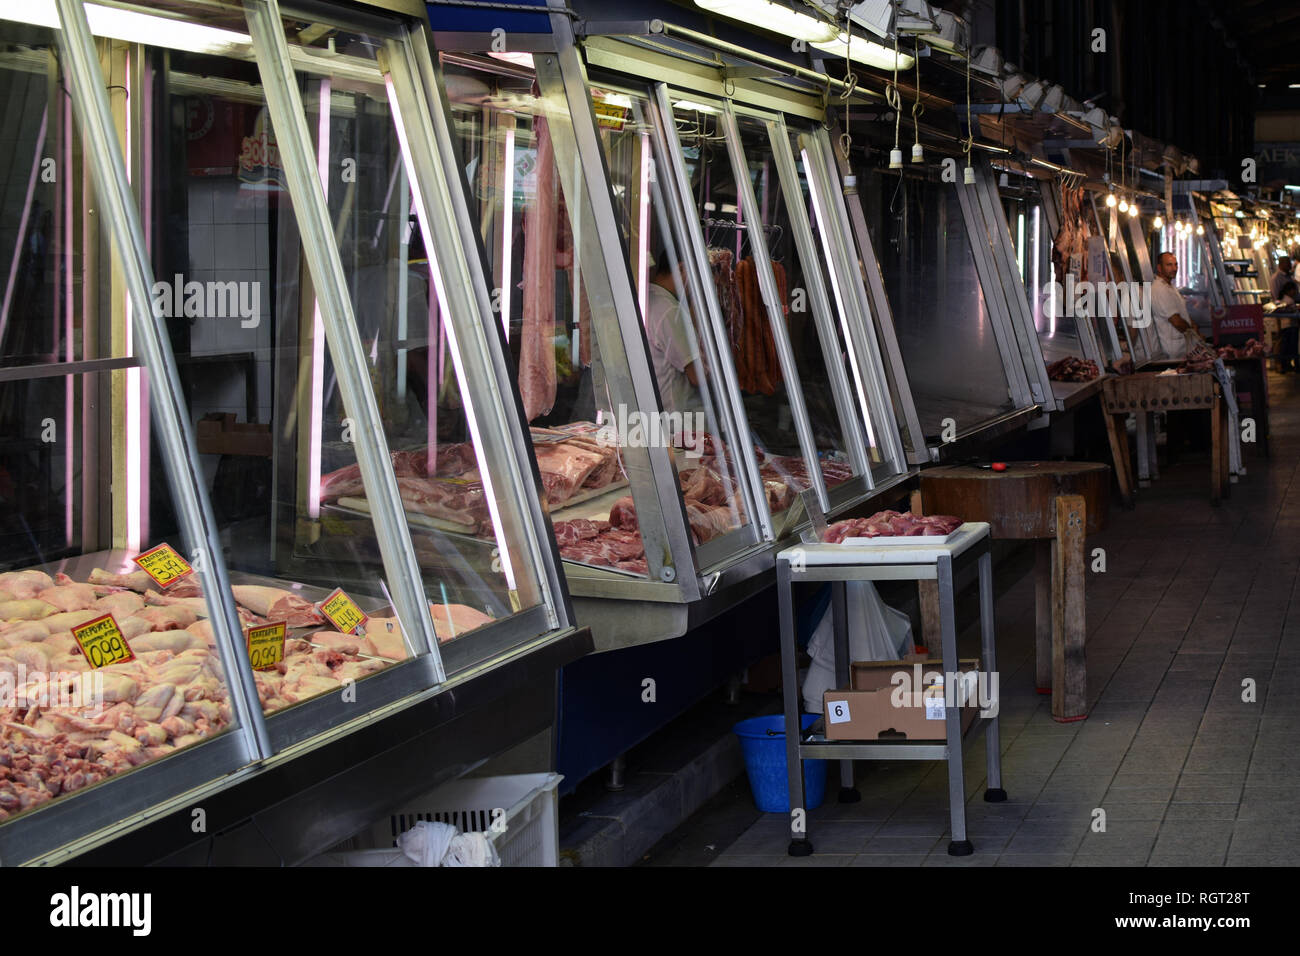 ATHENS, Grecia - 29 agosto 2018: fornitori al mercato di carne. Butcher Shop display in vetro con prezzi e tagliere blocco. Foto Stock